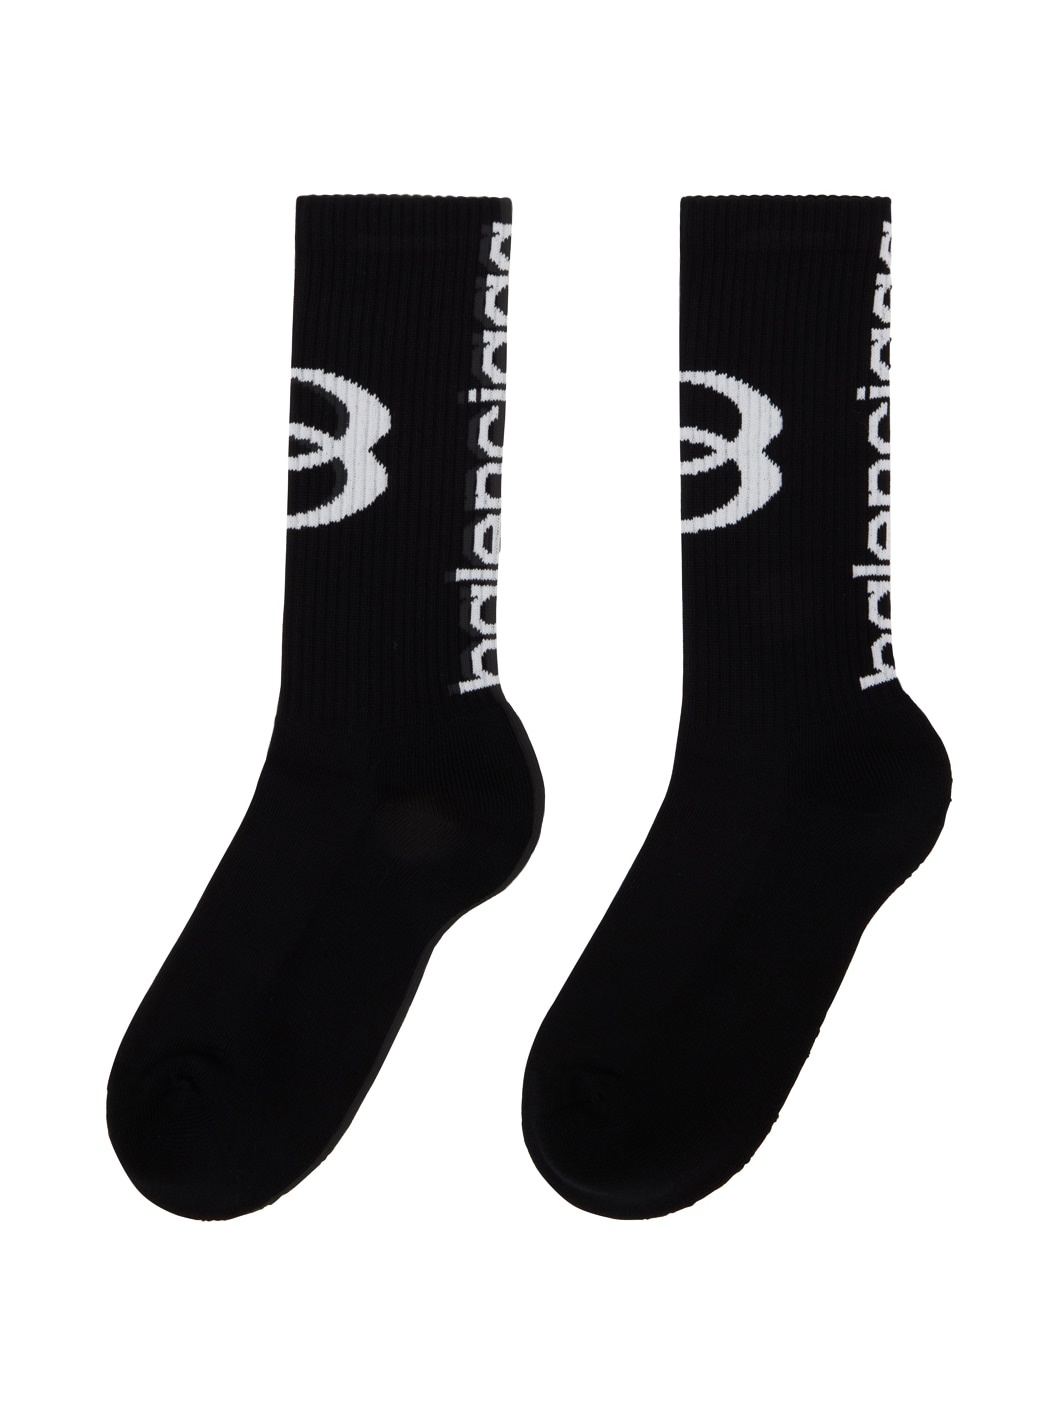 Black Unity Socks - 2